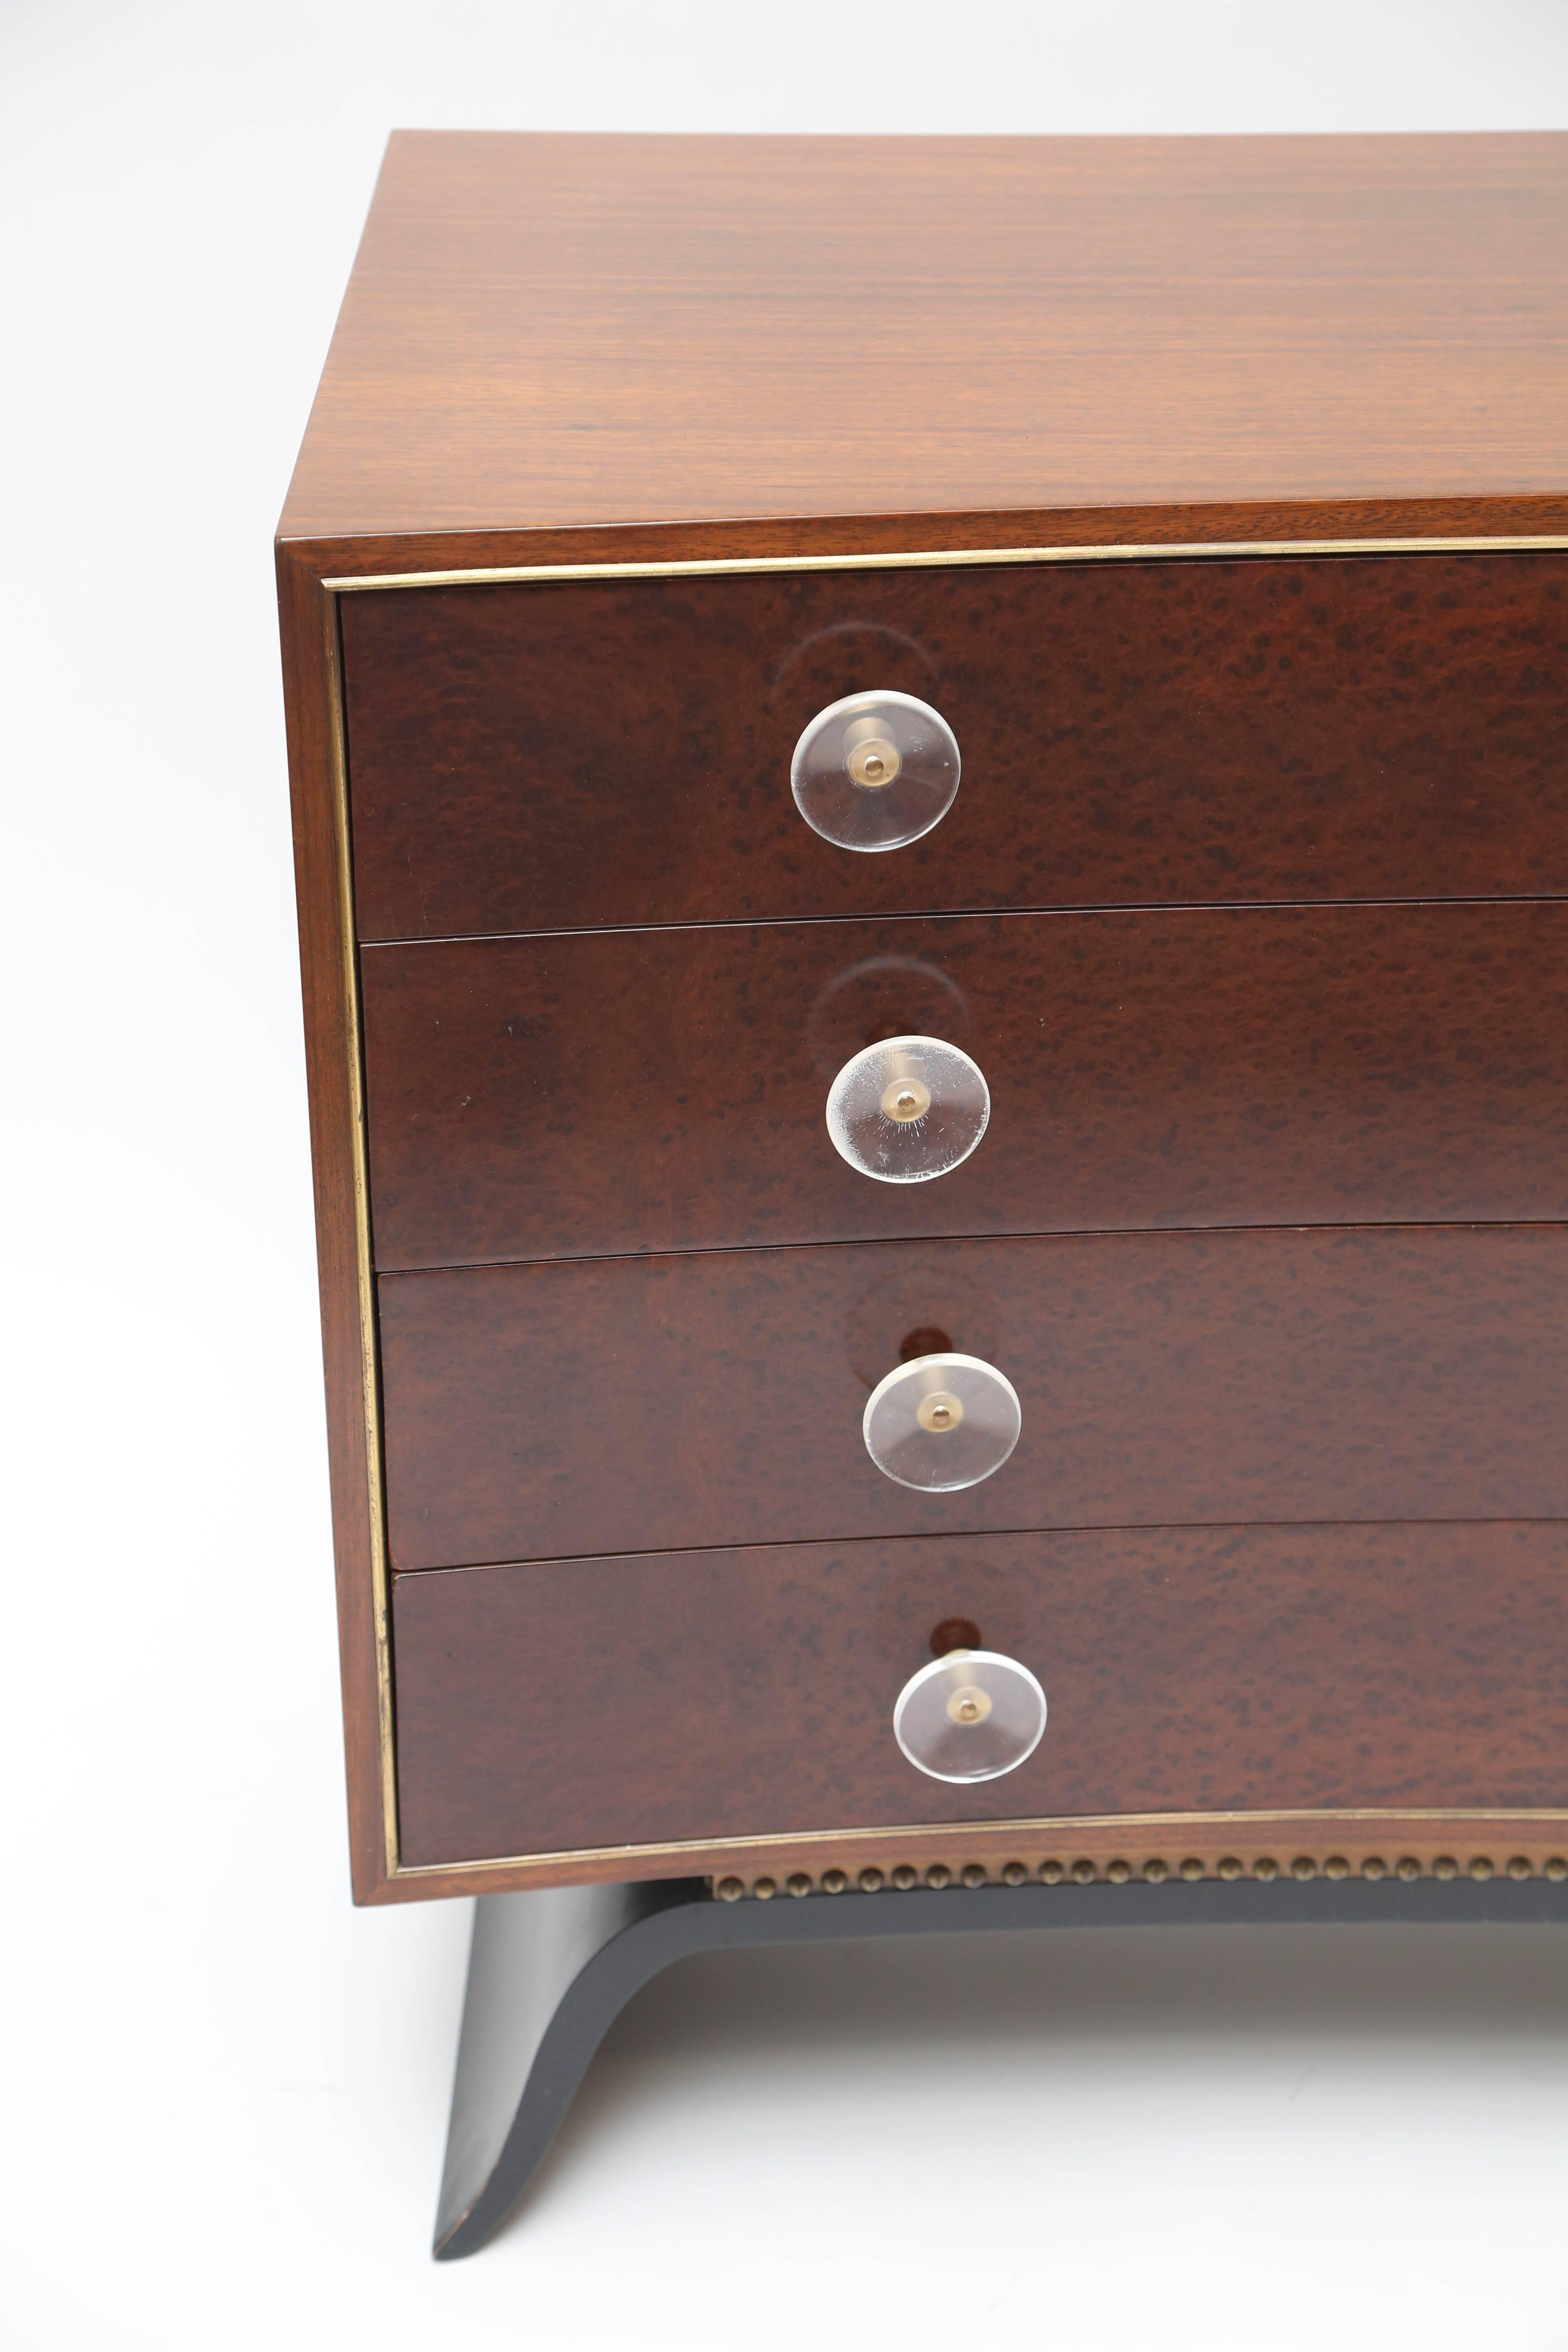 Stylish dresser designerd by Gilbert Rohde model #3920.
Lucite handles with sculptural legs.